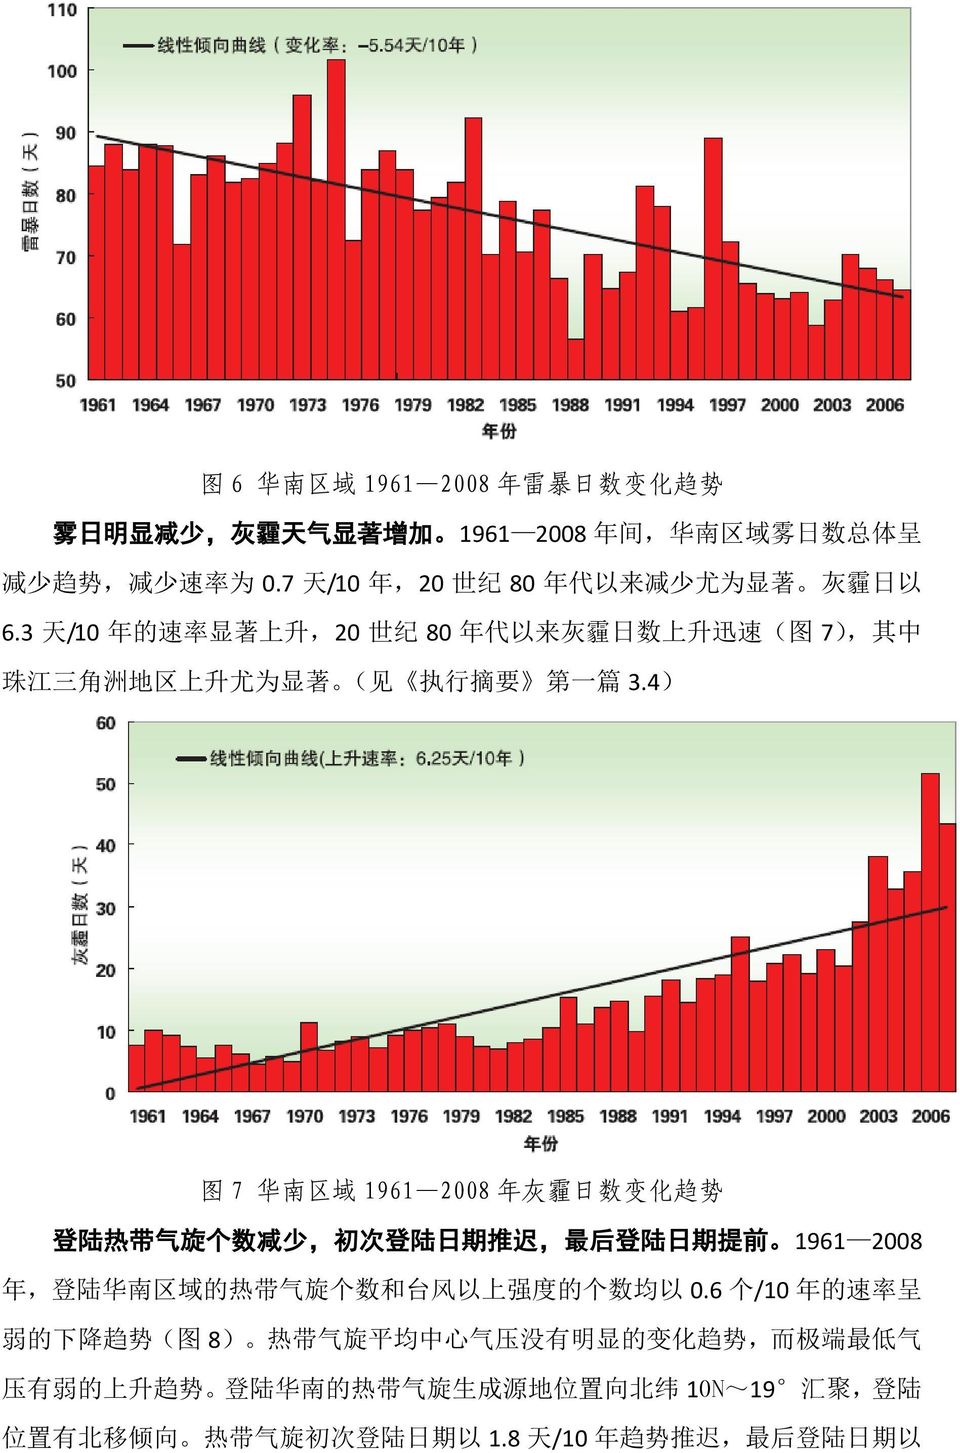 4) 图 7 华 南 区 域 1961 2008 年 灰 霾 日 数 变 化 趋 势 登 陆 热 带 气 旋 个 数 减 少, 初 次 登 陆 日 期 推 迟, 最 后 登 陆 日 期 提 前 1961 2008 年, 登 陆 华 南 区 域 的 热 带 气 旋 个 数 和 台 风 以 上 强 度 的 个 数 均 以 0.